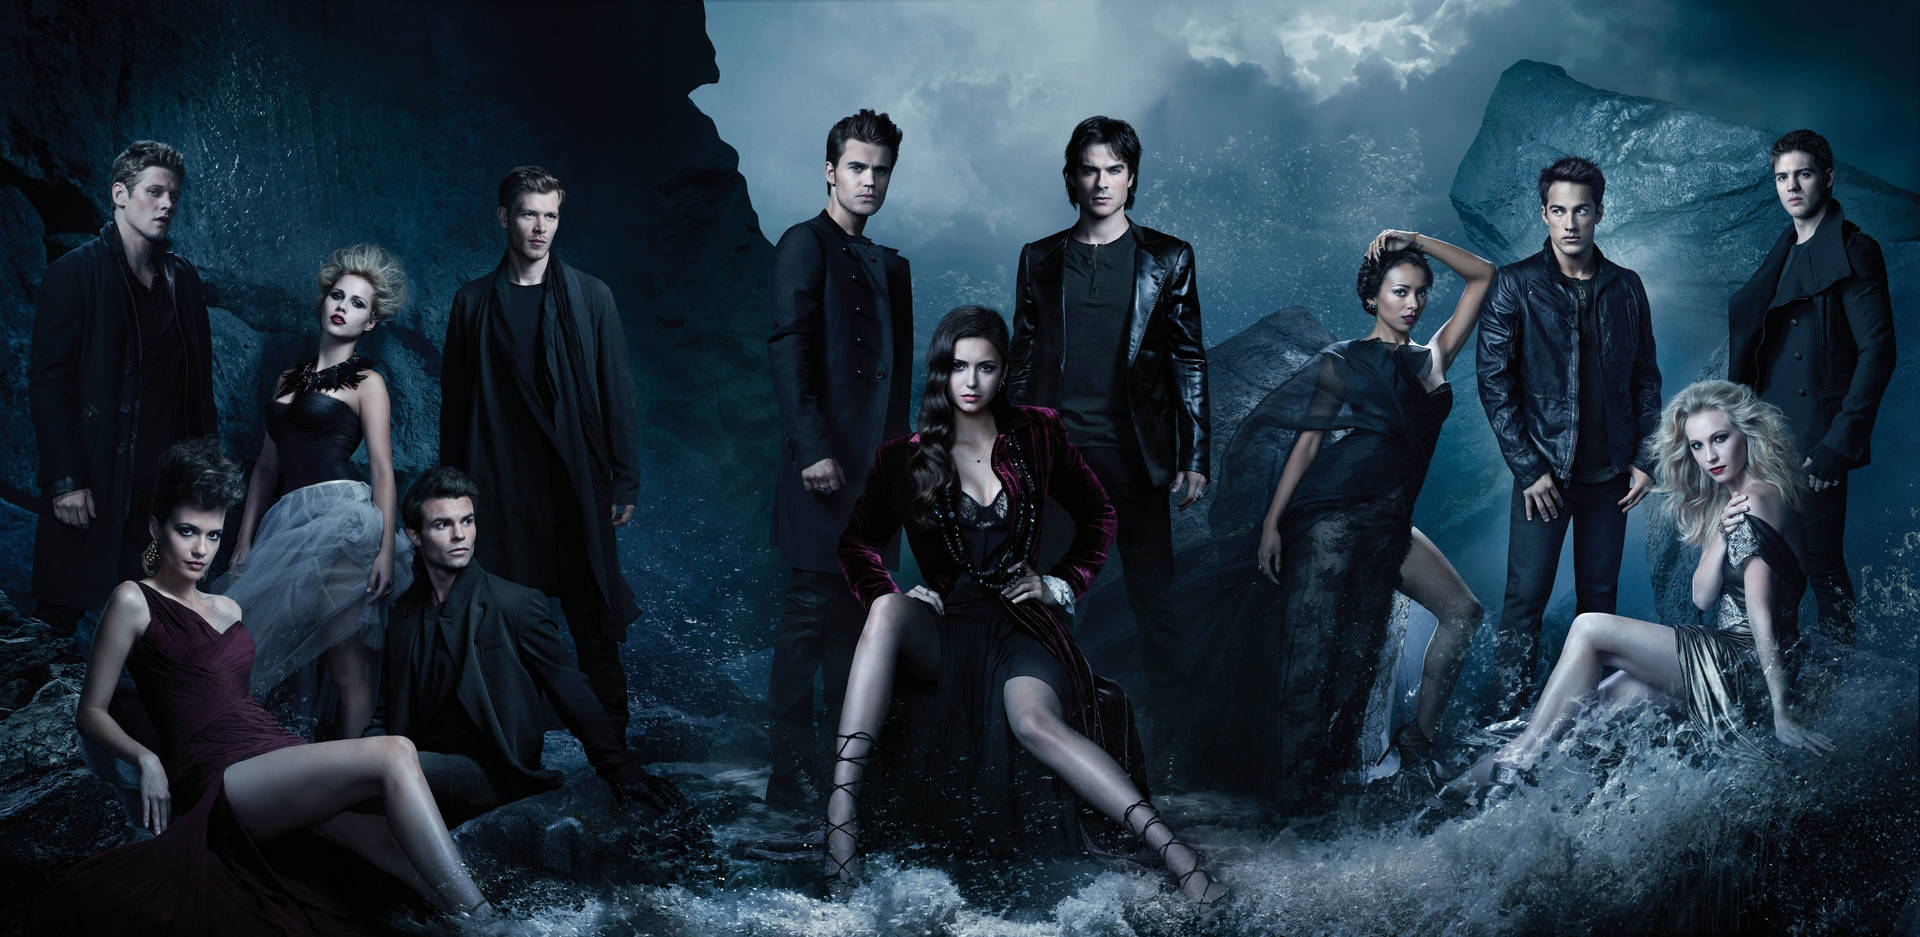 Free Vampire Diaries Wallpaper Downloads, Vampire Diaries Wallpaper for FREE